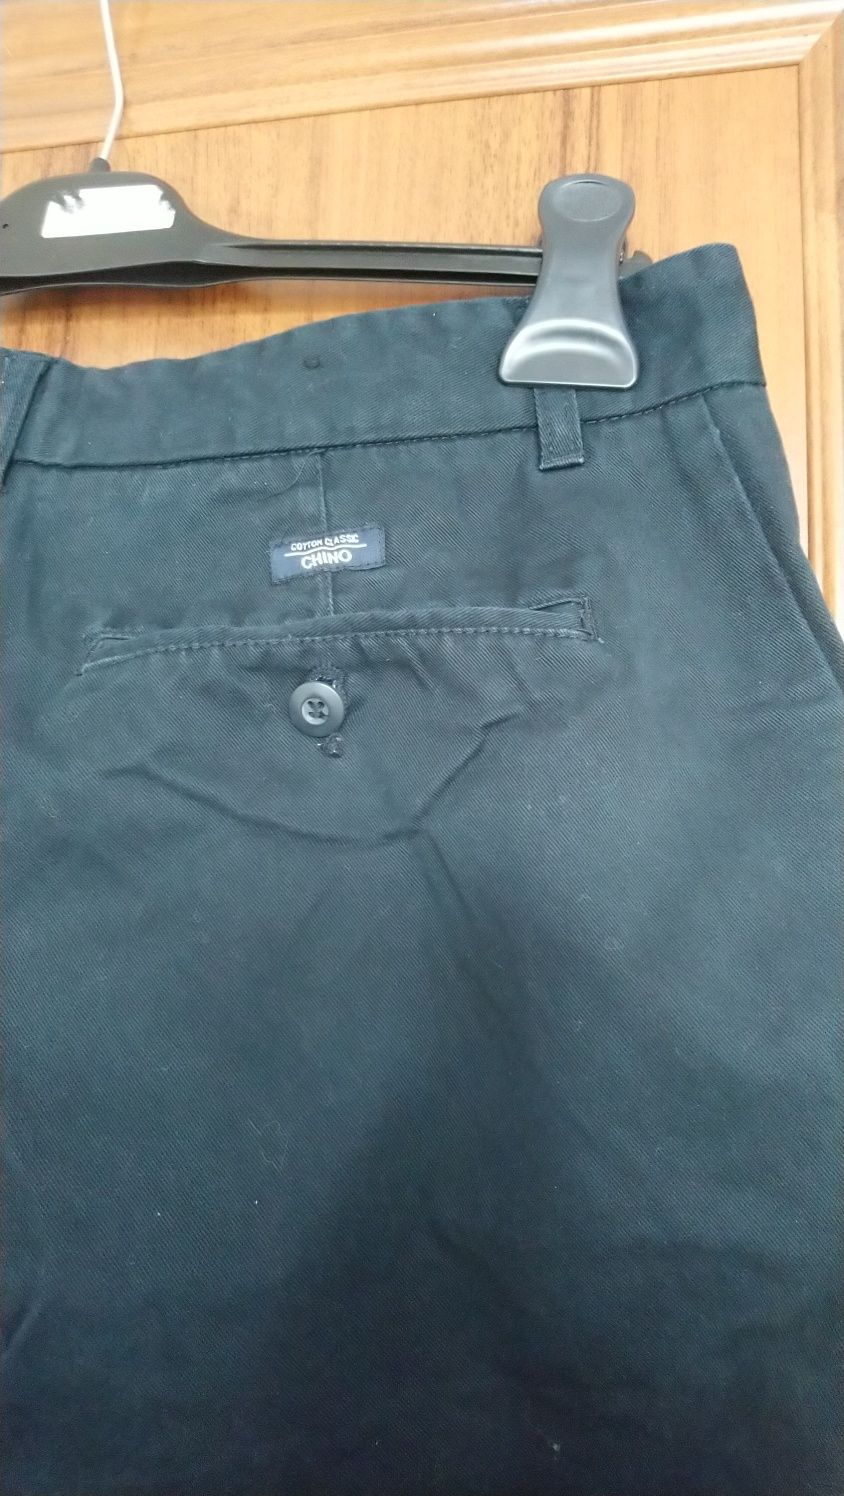 Spodnie męskie bawełniane czarne Cedarwood rozmiar fabryczny M